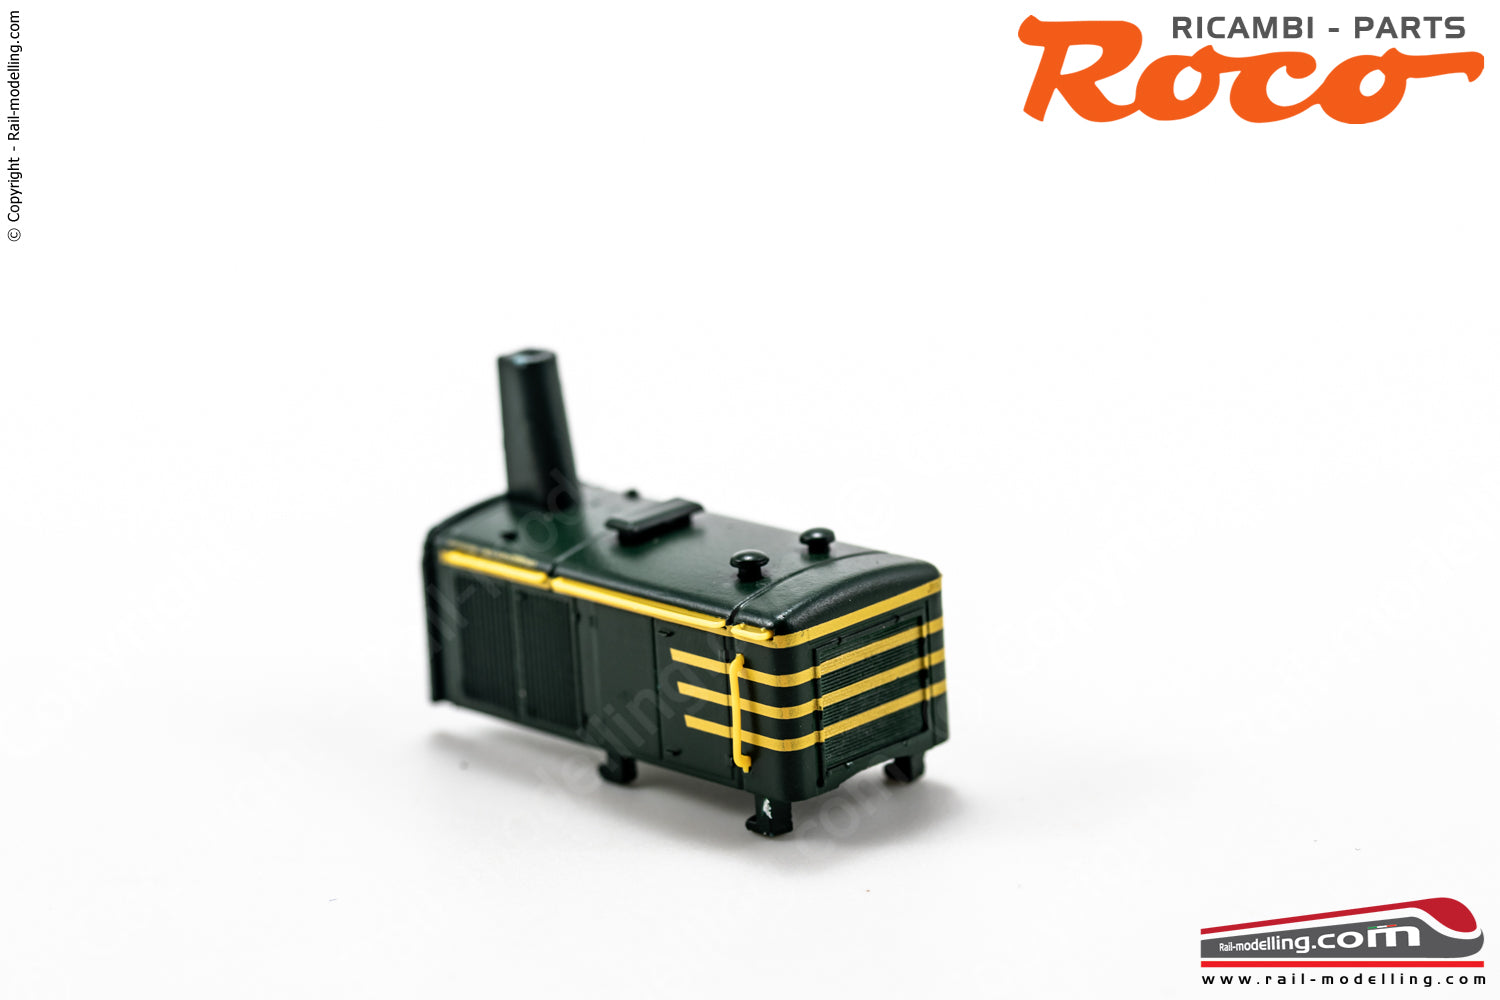 ROCO 130860 - H0 1:87 - Carrozzeria copertura motore per serie FS D 214.4xxx